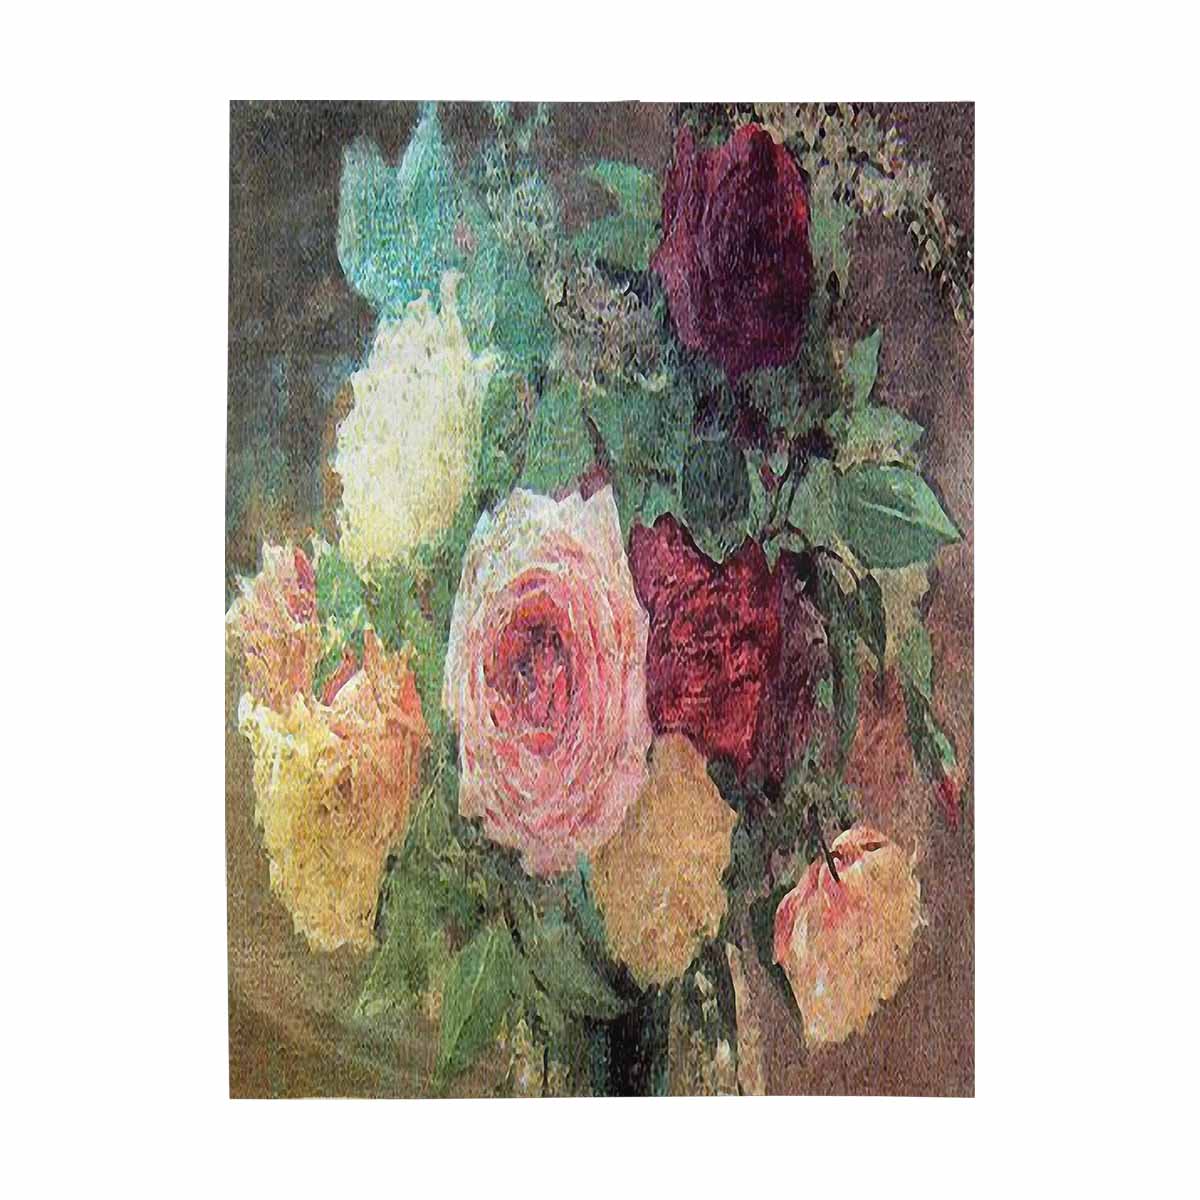 Vintage floral TAPESTRY, LARGE 60 x 80 in, Vertical, Design 29